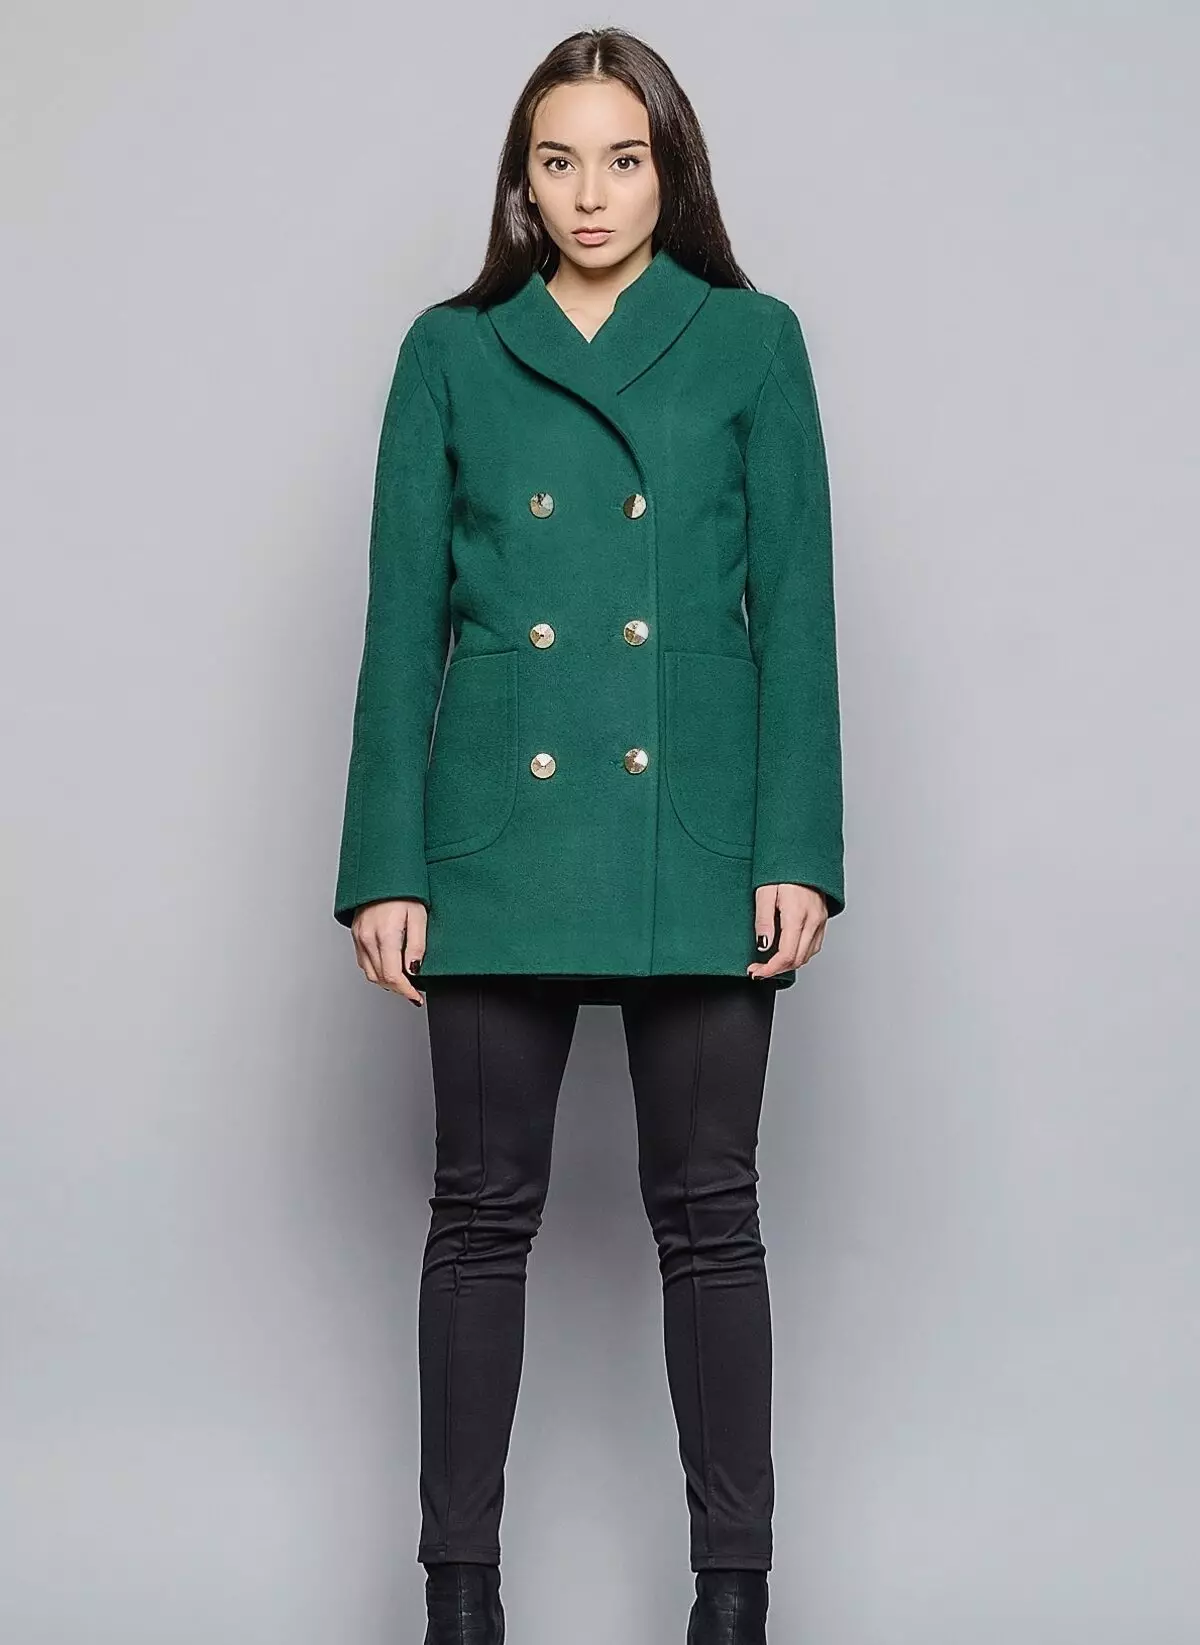 Qué llevar un abrigo verde (122 fotos): verde oscuro, qué bufanda se ajustará, bolsa, accesorios, abrigo con un collar de inglés 601_18